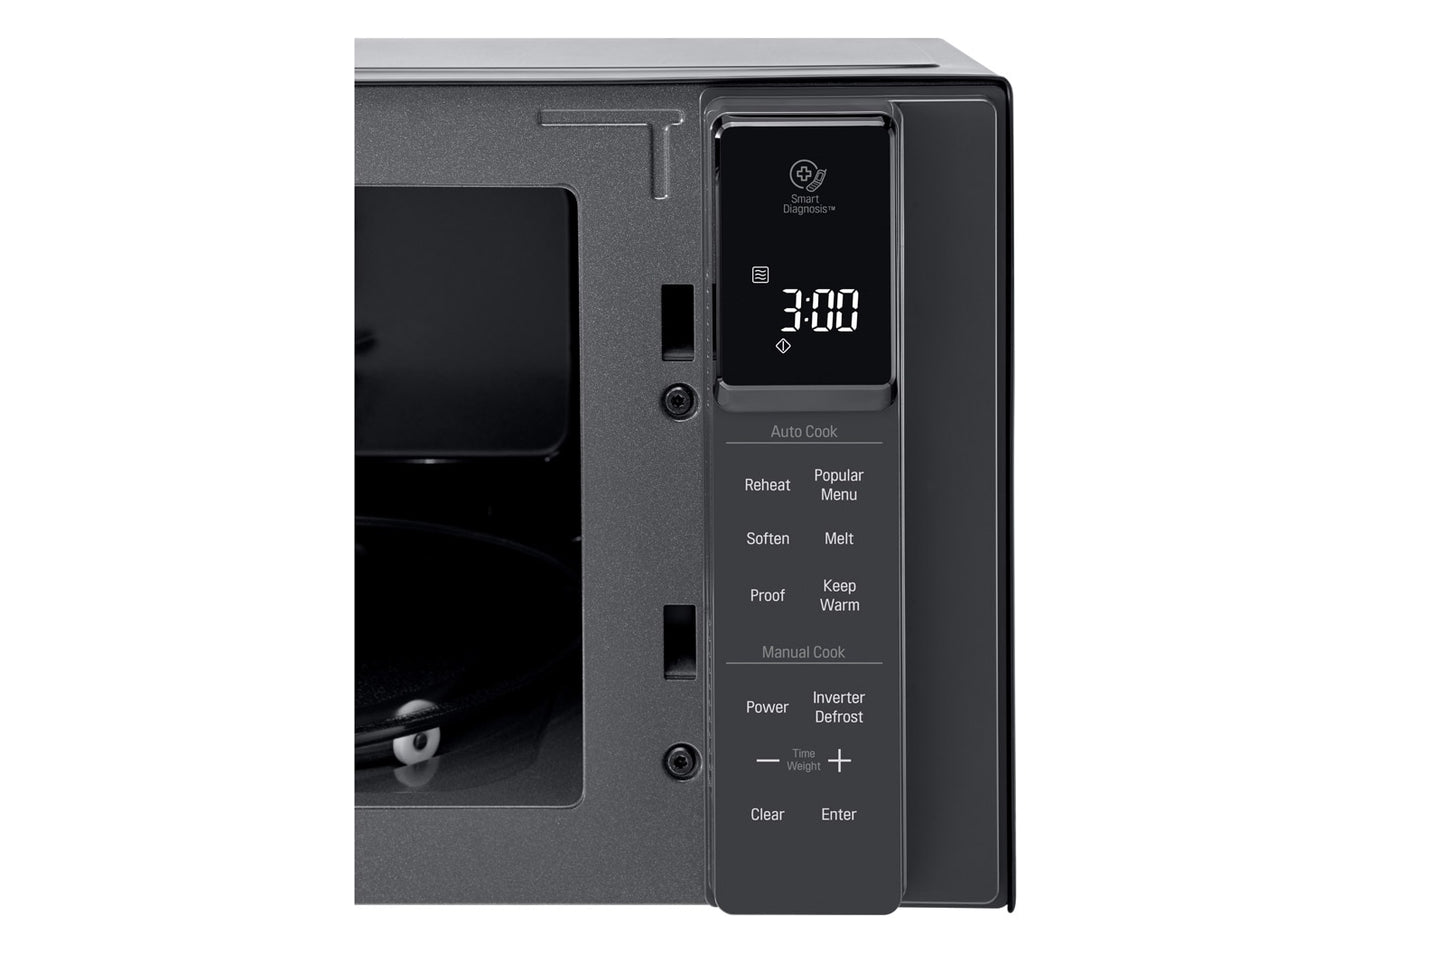 LG 25L Smart Inverter Microwave Oven